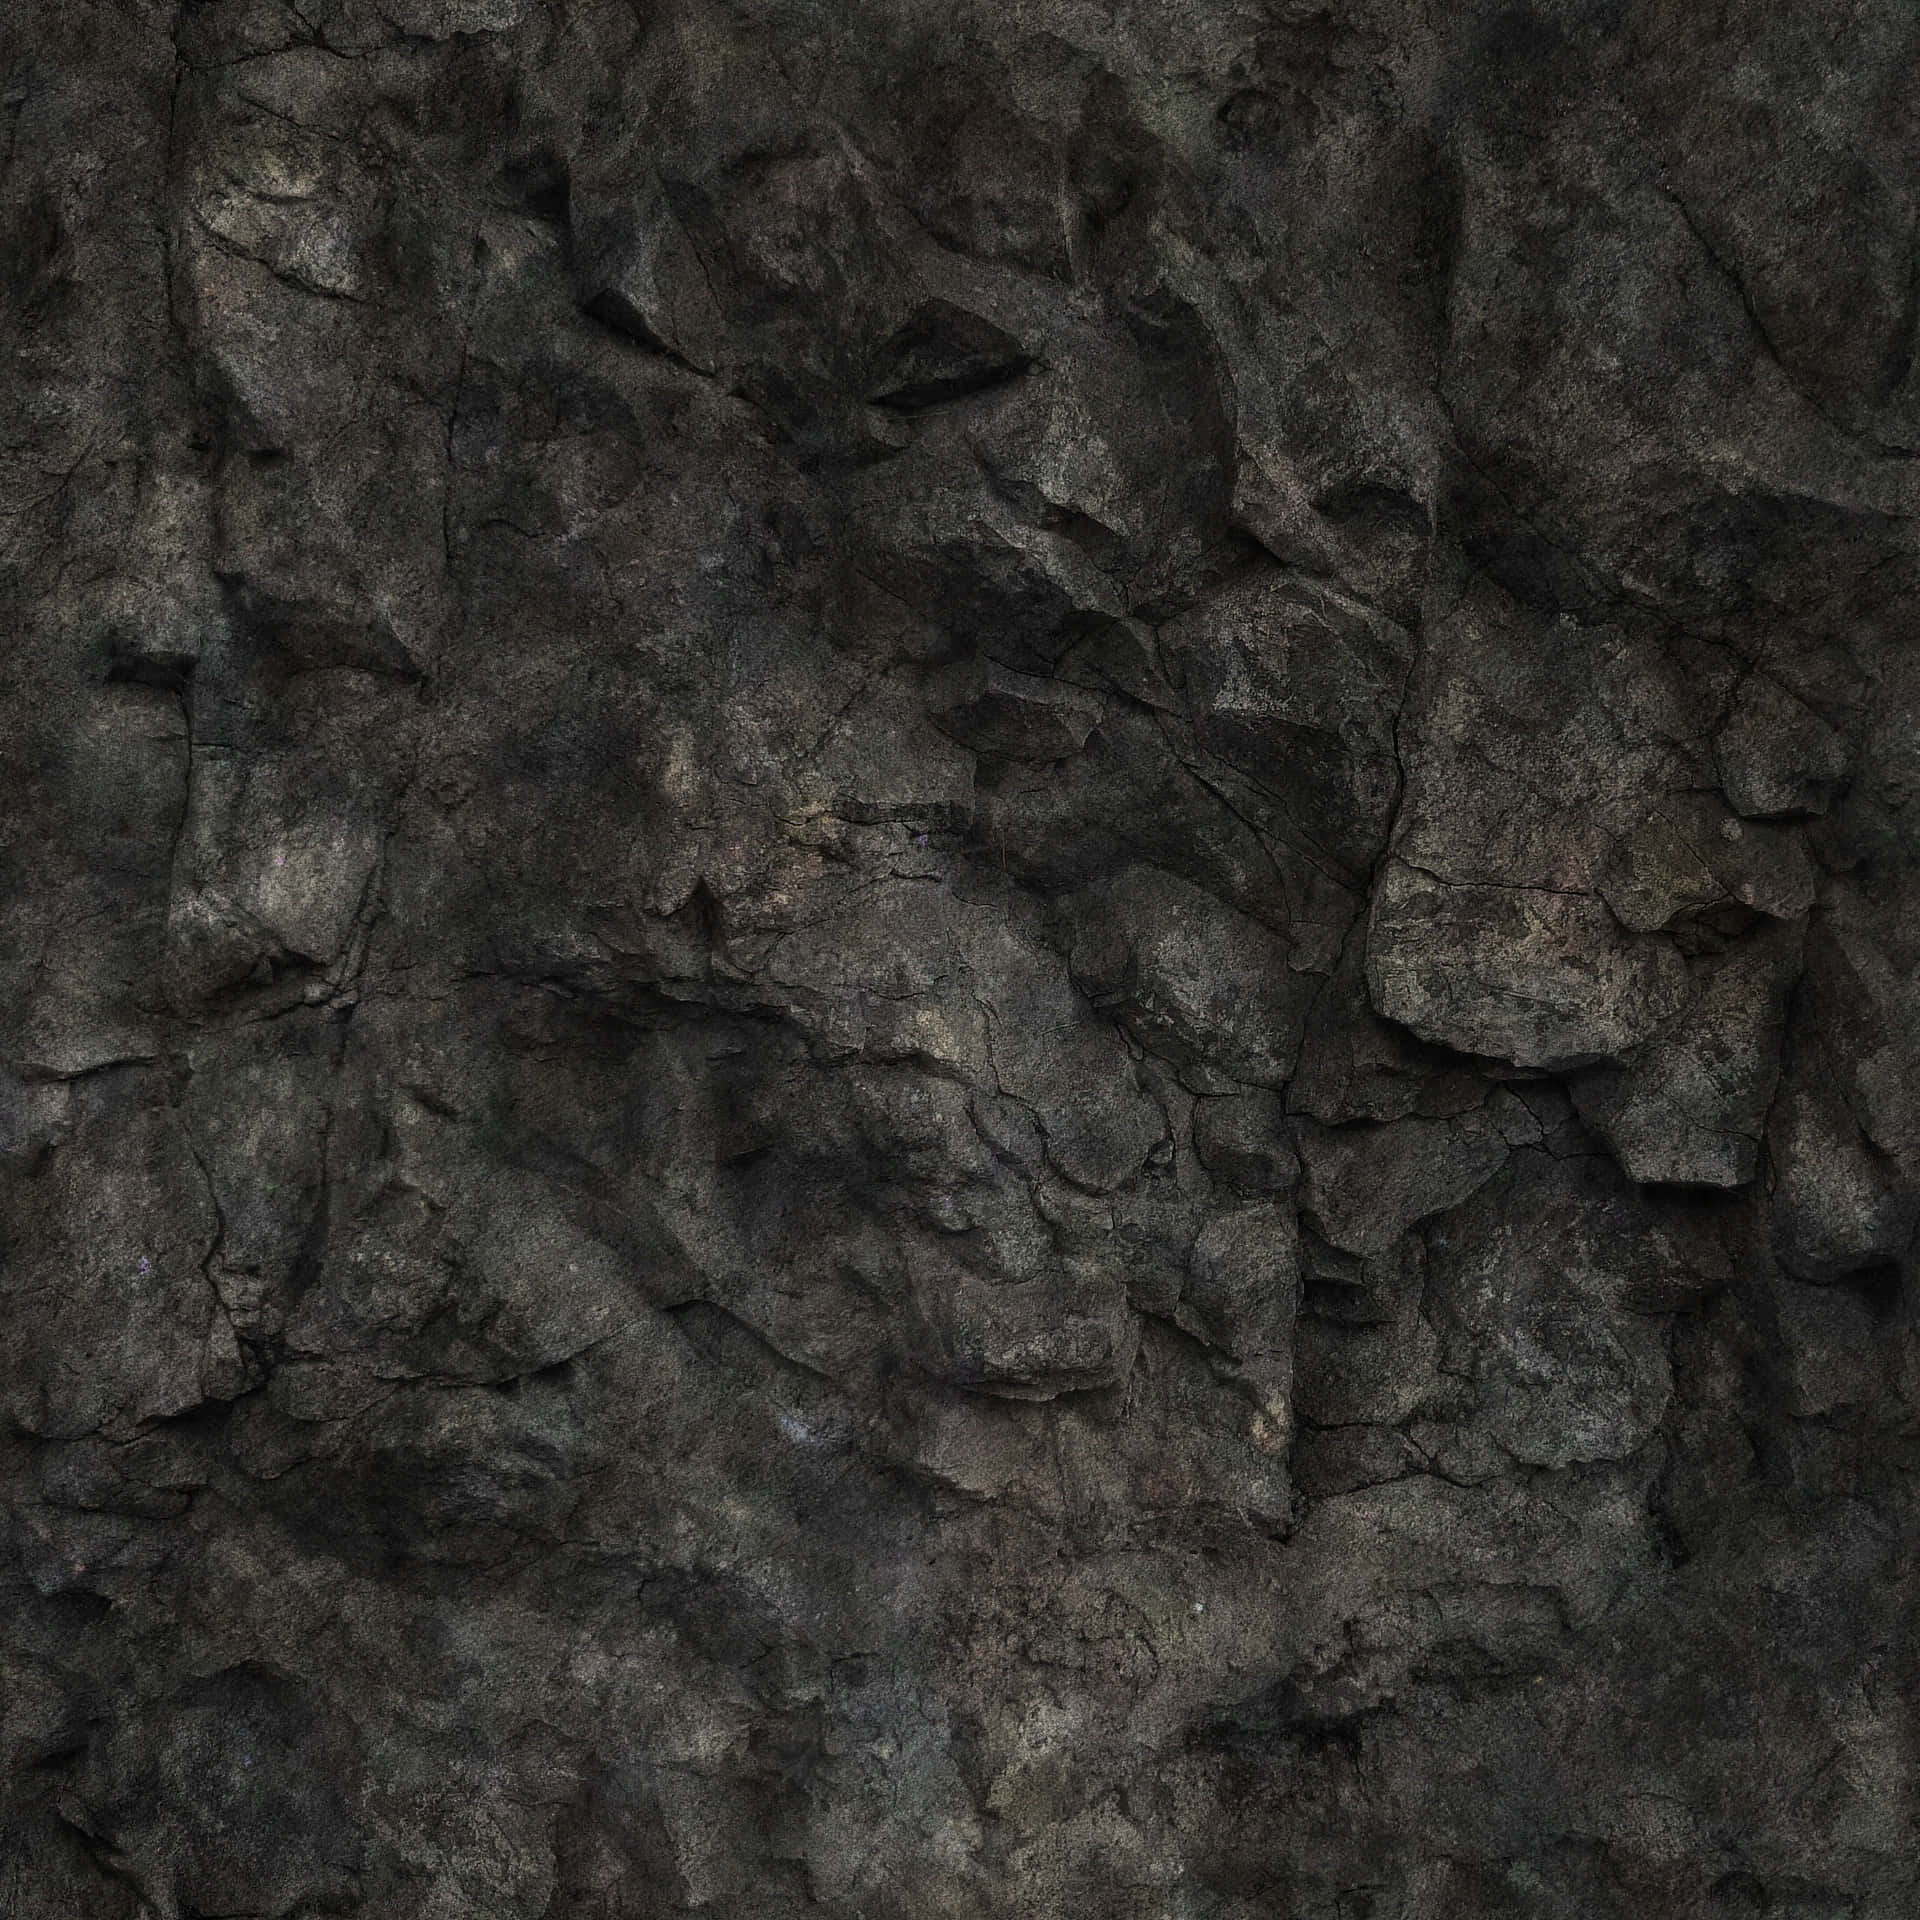 Impresionantepaisaje Oscuro De Rocas Fondo de pantalla